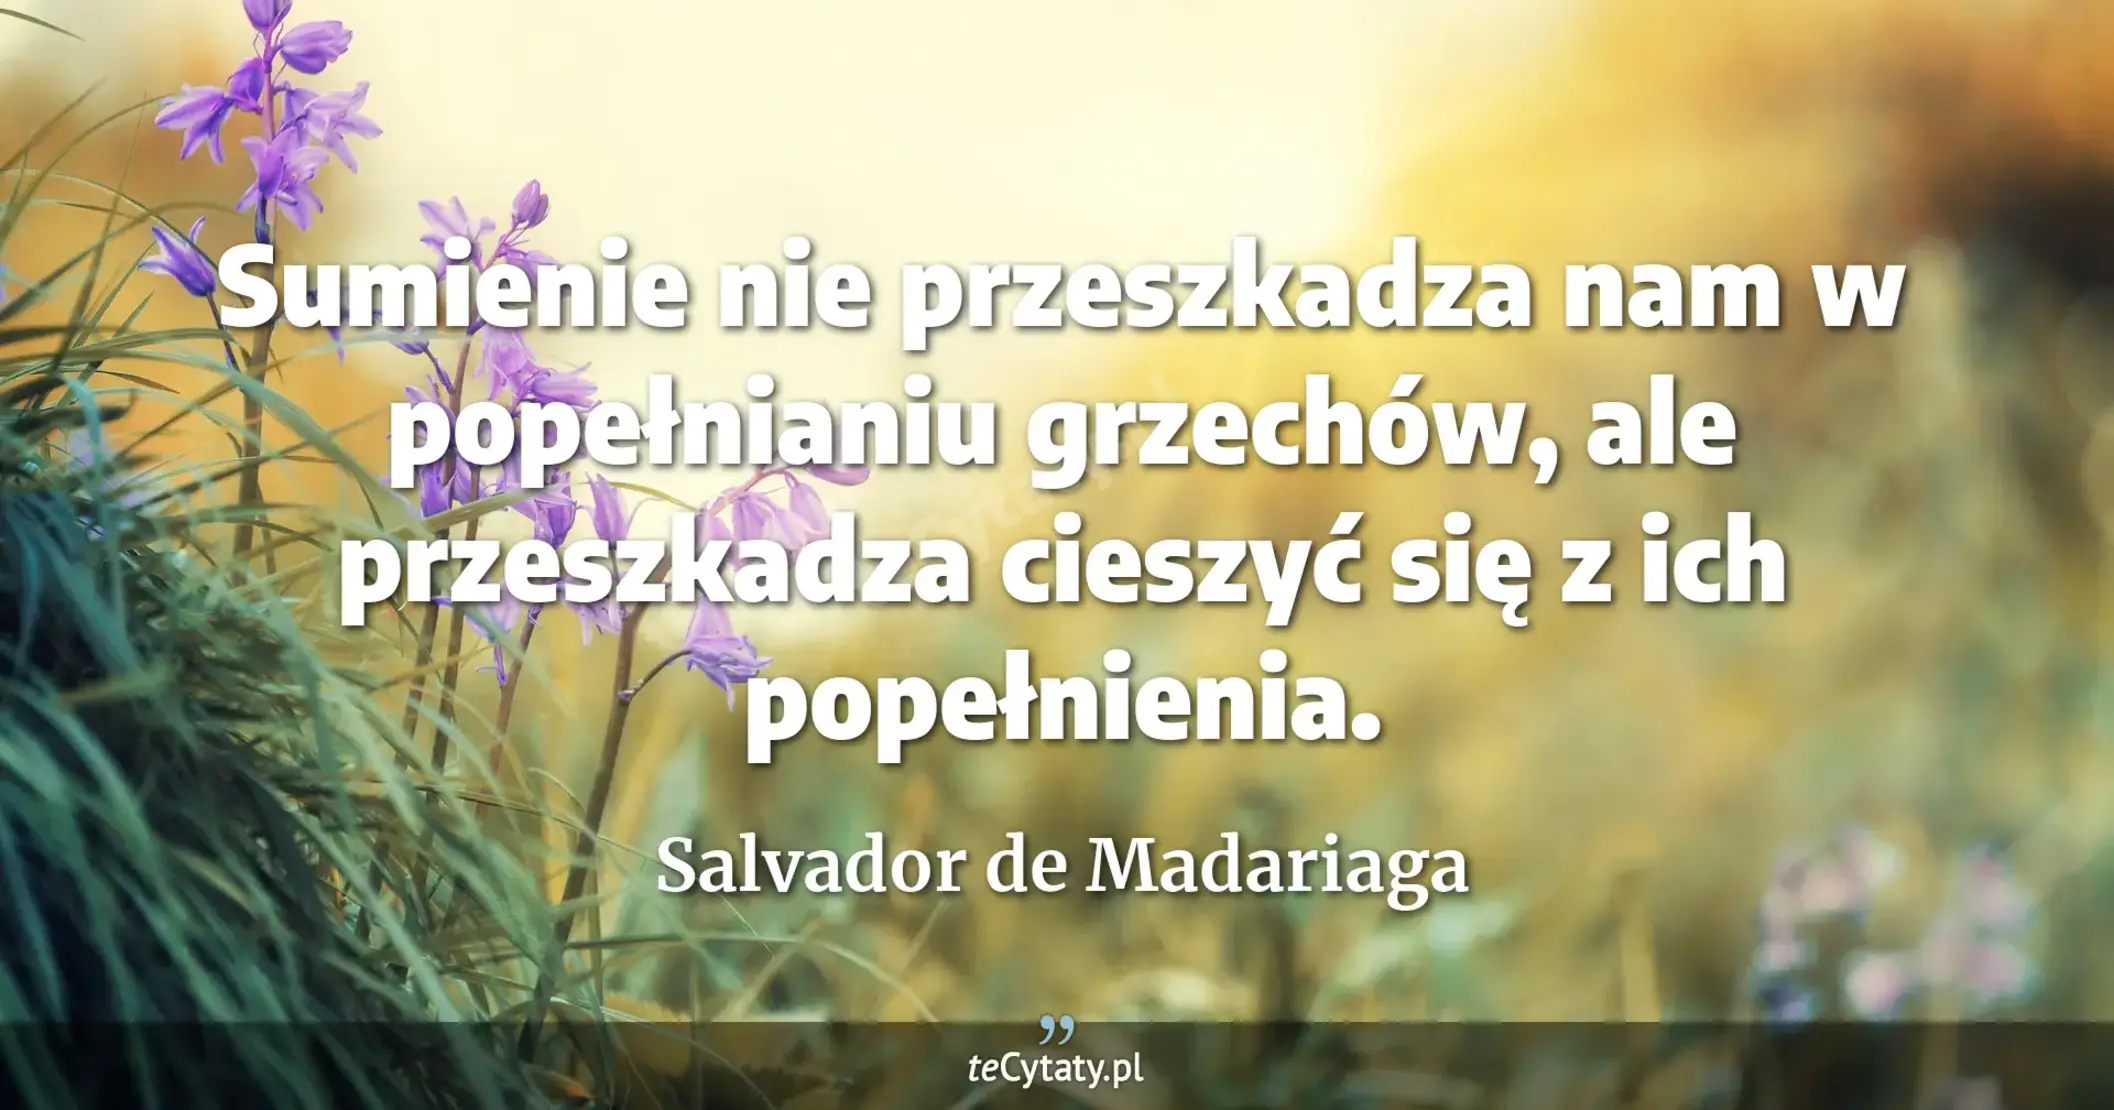 Sumienie nie przeszkadza nam w popełnianiu grzechów, ale przeszkadza cieszyć się z ich popełnienia. - Salvador de Madariaga